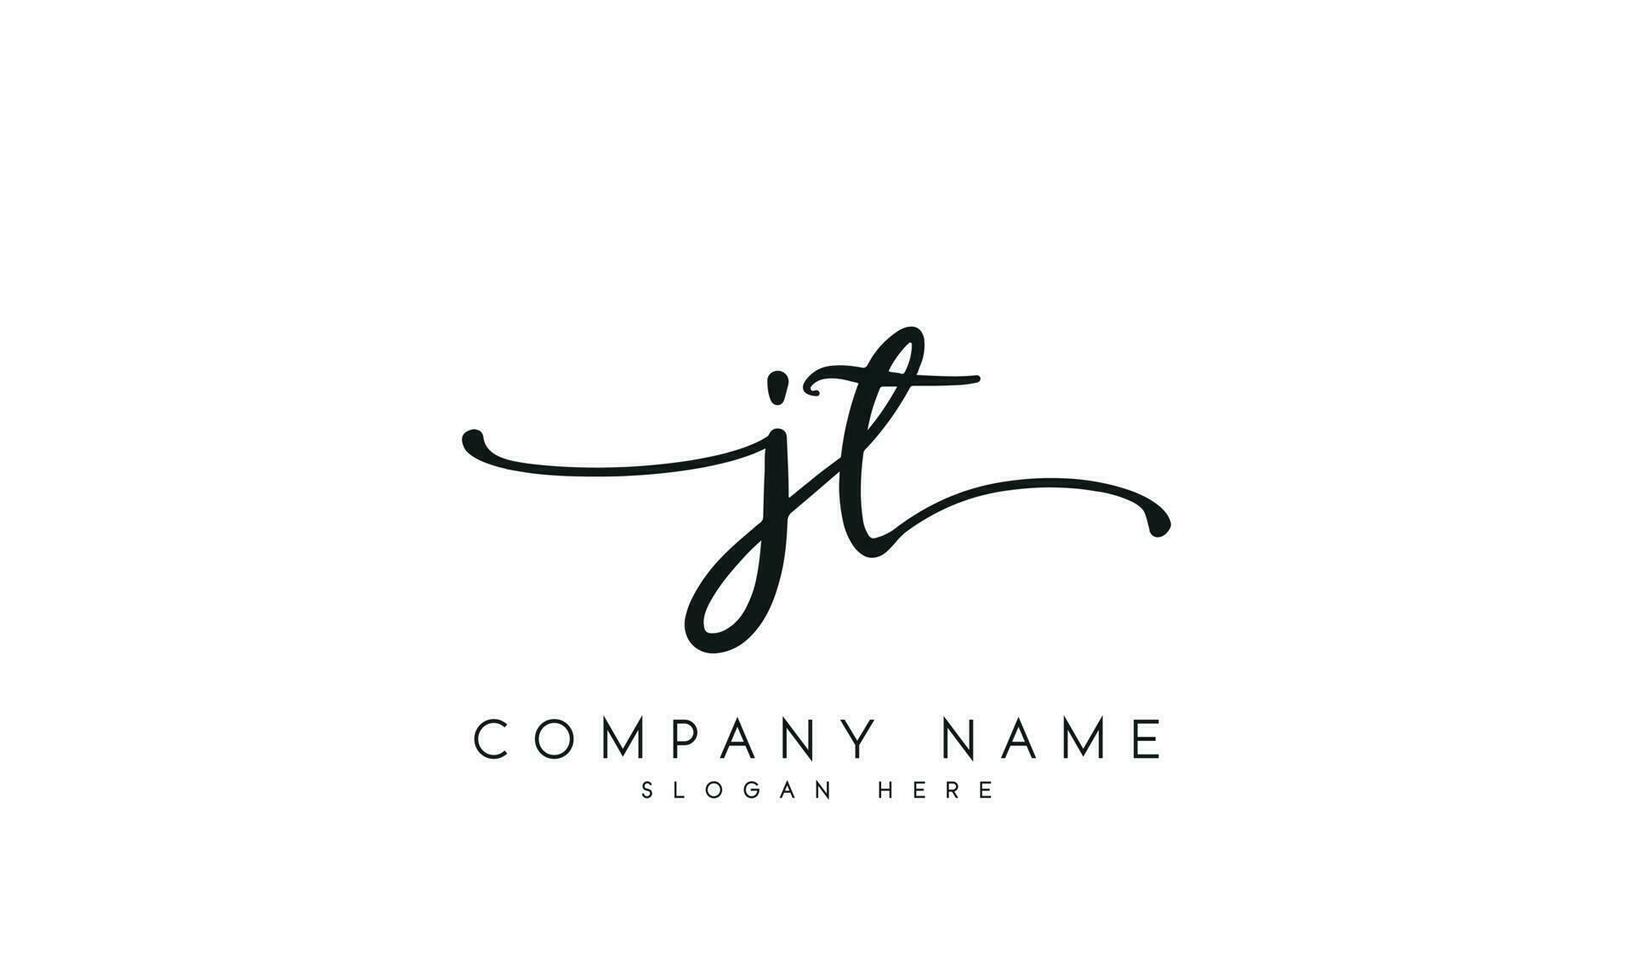 Handschrift jt Logo Design. jt Logo Design Vektor Illustration auf Weiß Hintergrund. kostenlos Vektor